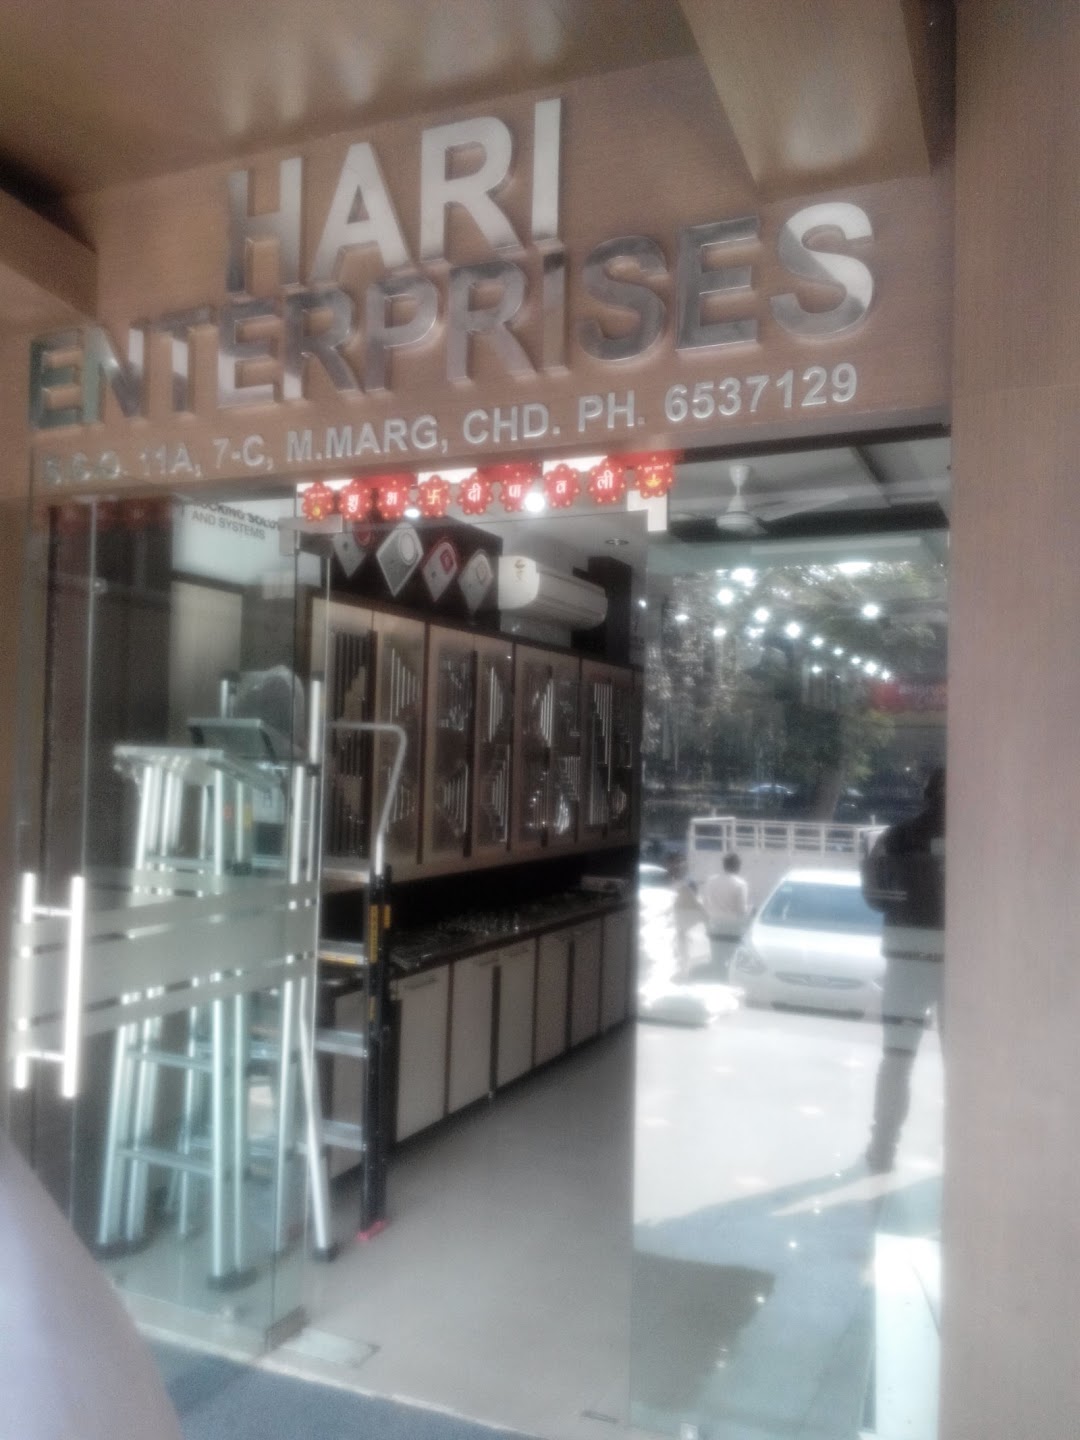 Hari Enterprises